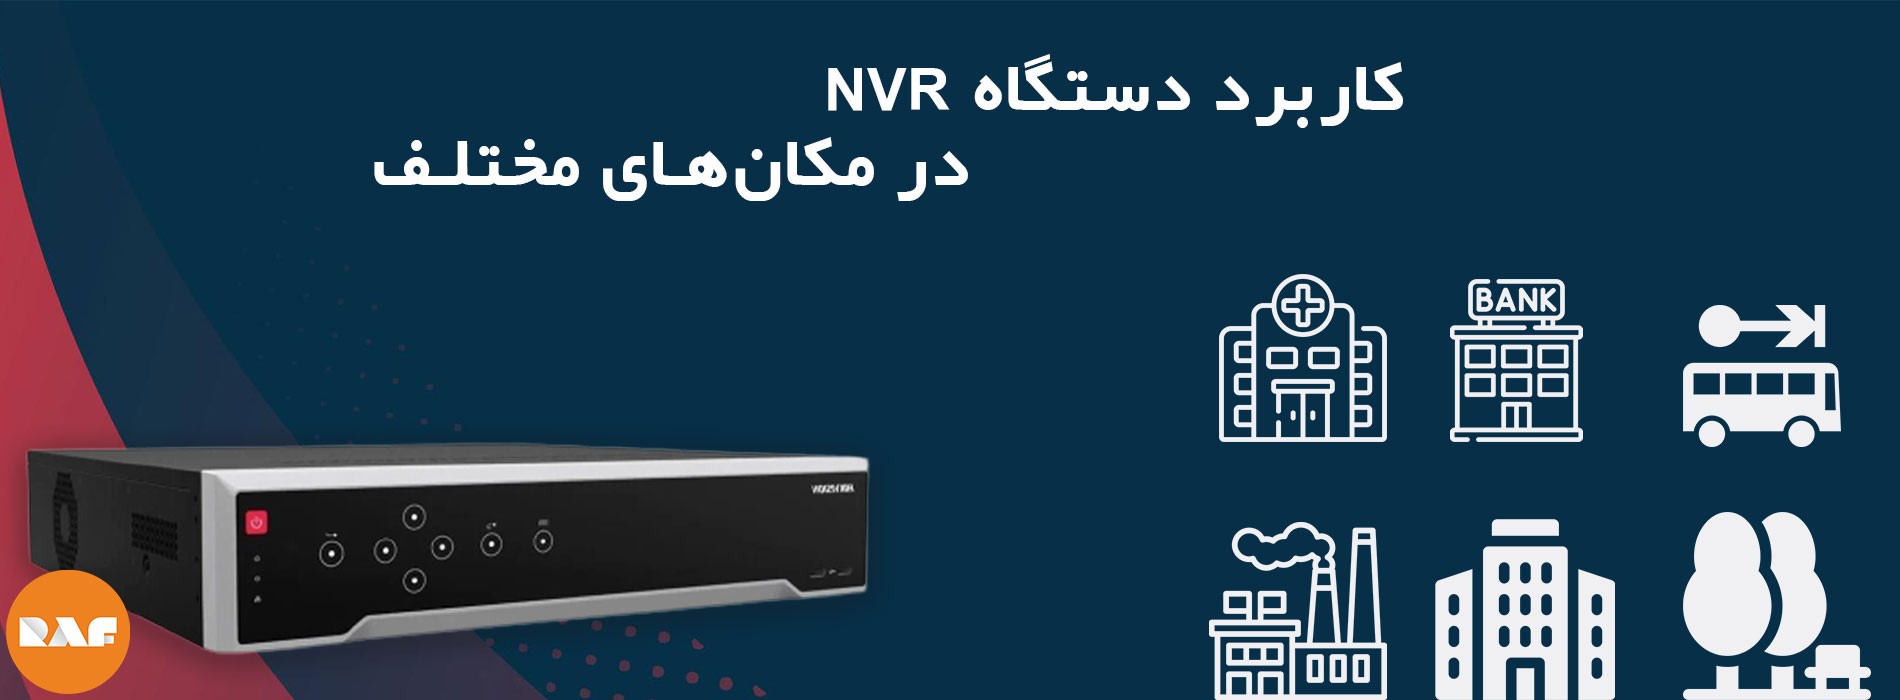 کاربرد دستگاه NVR در مکان های مختلف